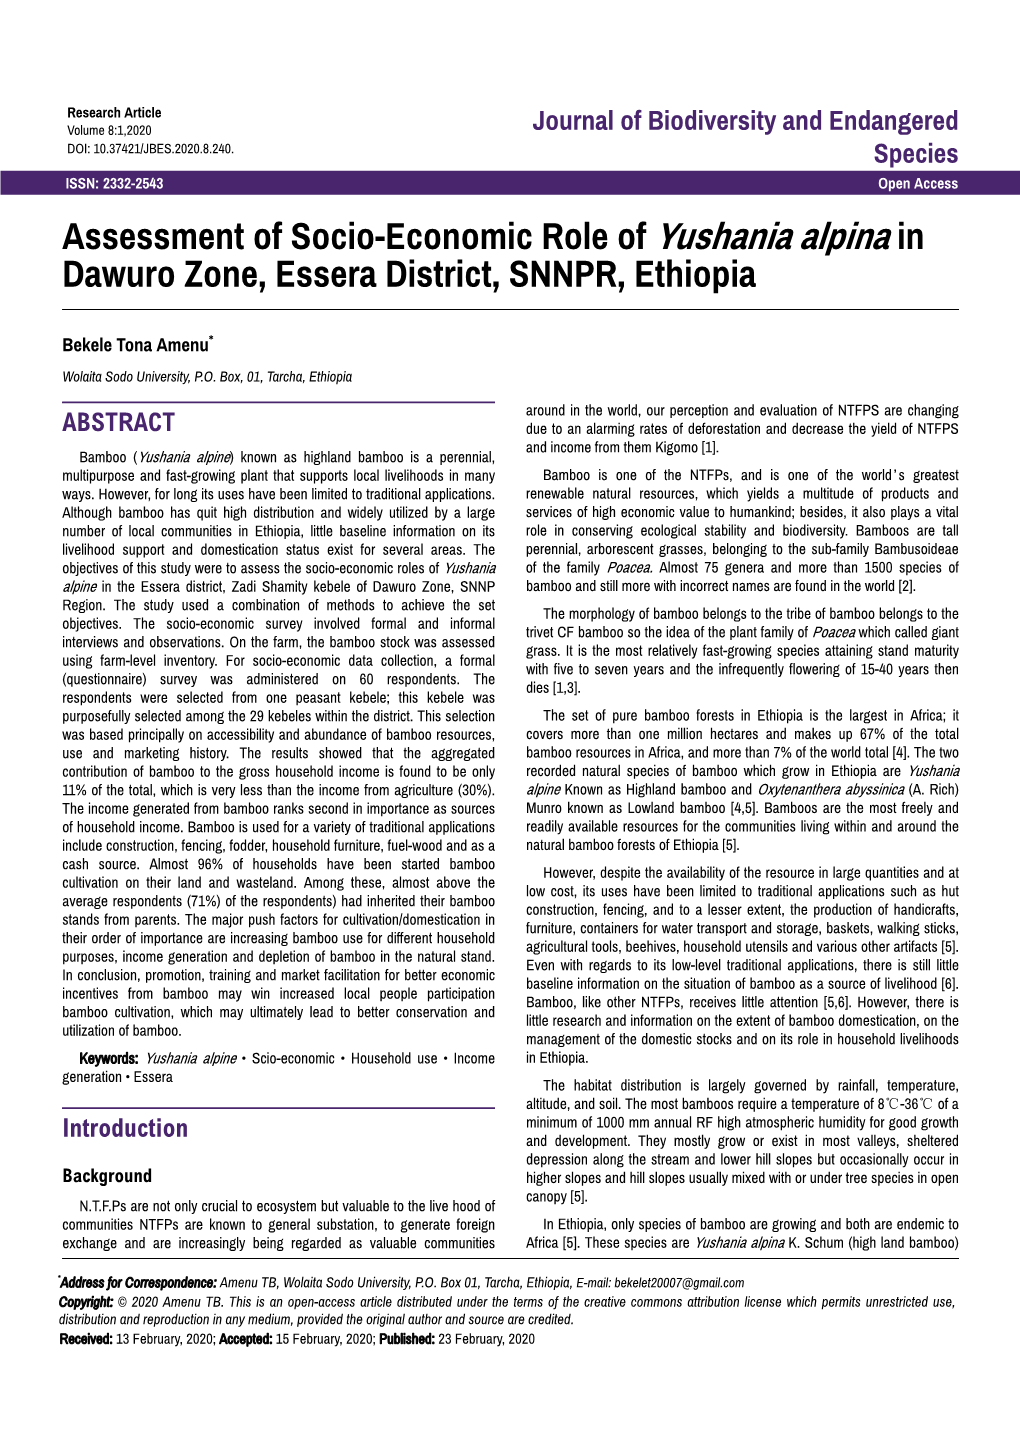 Assessment of Socio-Economic Role of Yushania Alpina in Dawuro Zone, Essera District, SNNPR, Ethiopia